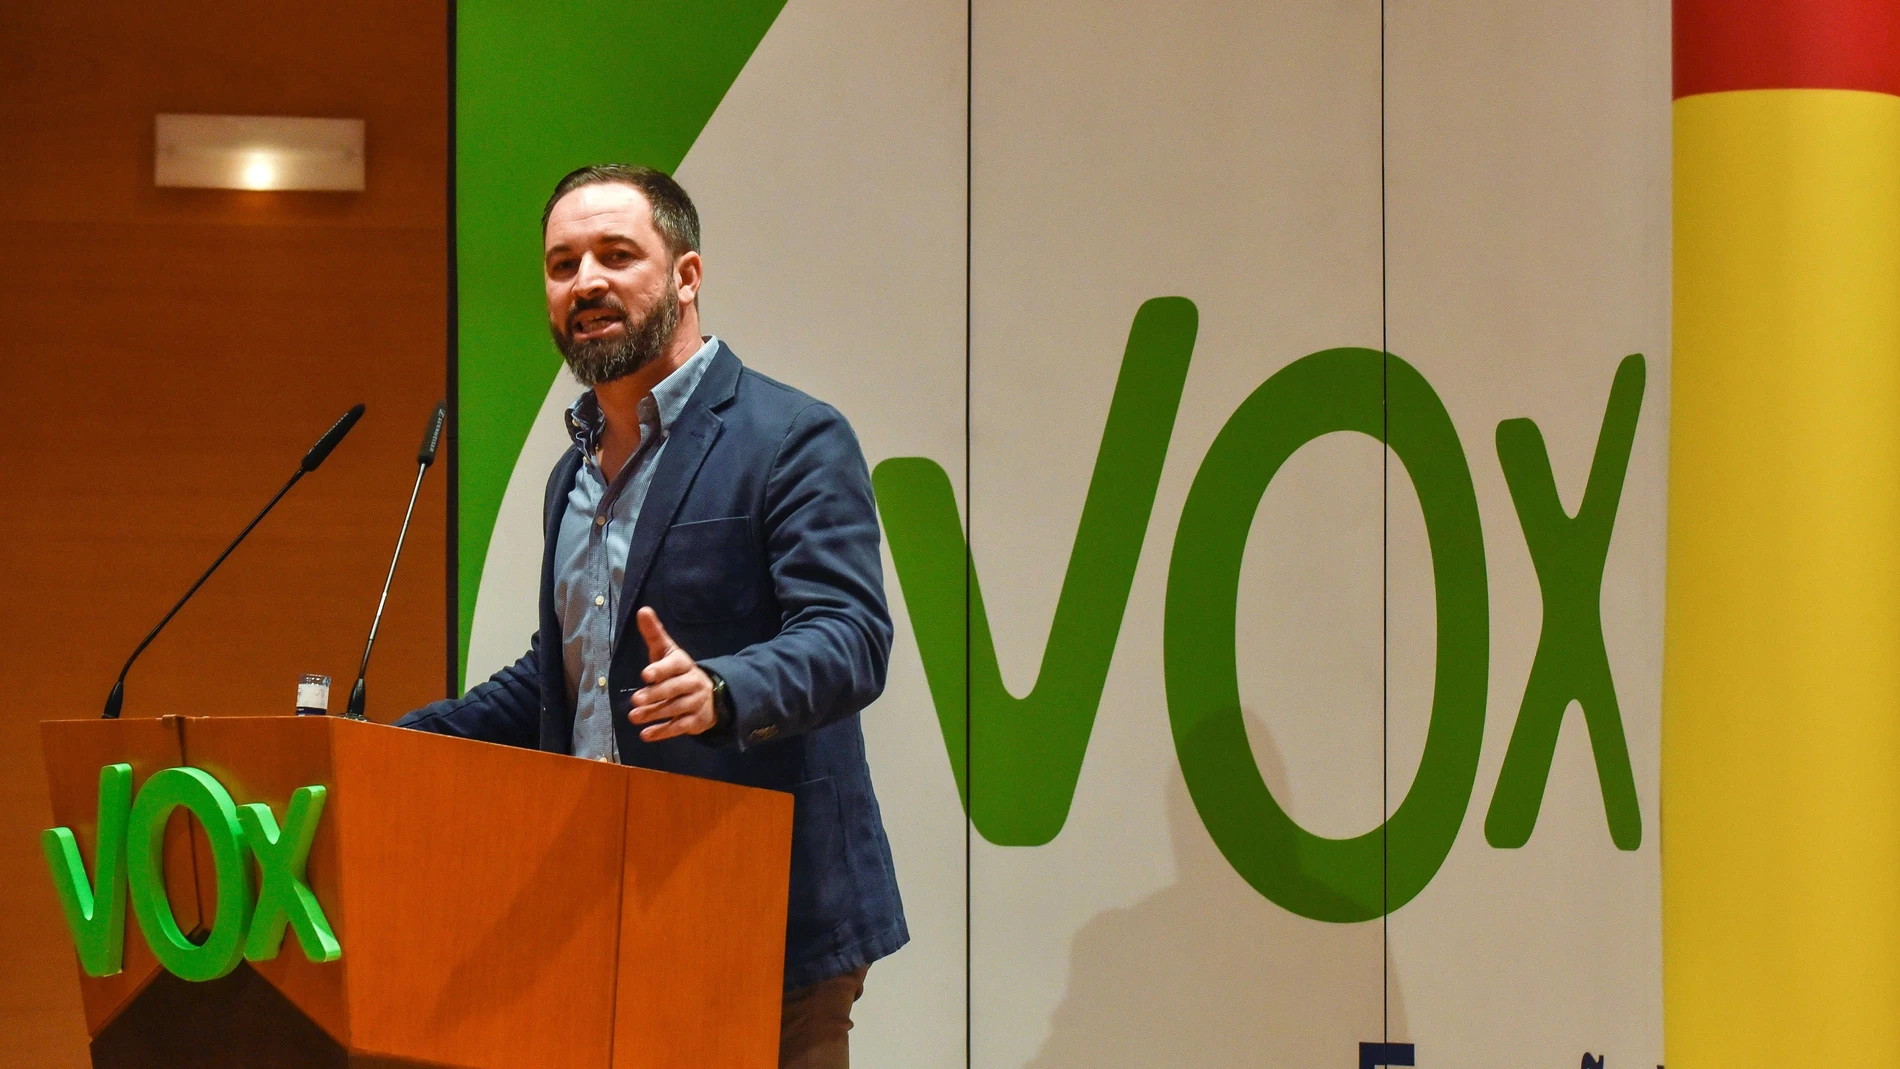 El presidente de Vox, Santiago Abascal, interviene durante un acto político celebrado en Bilbao